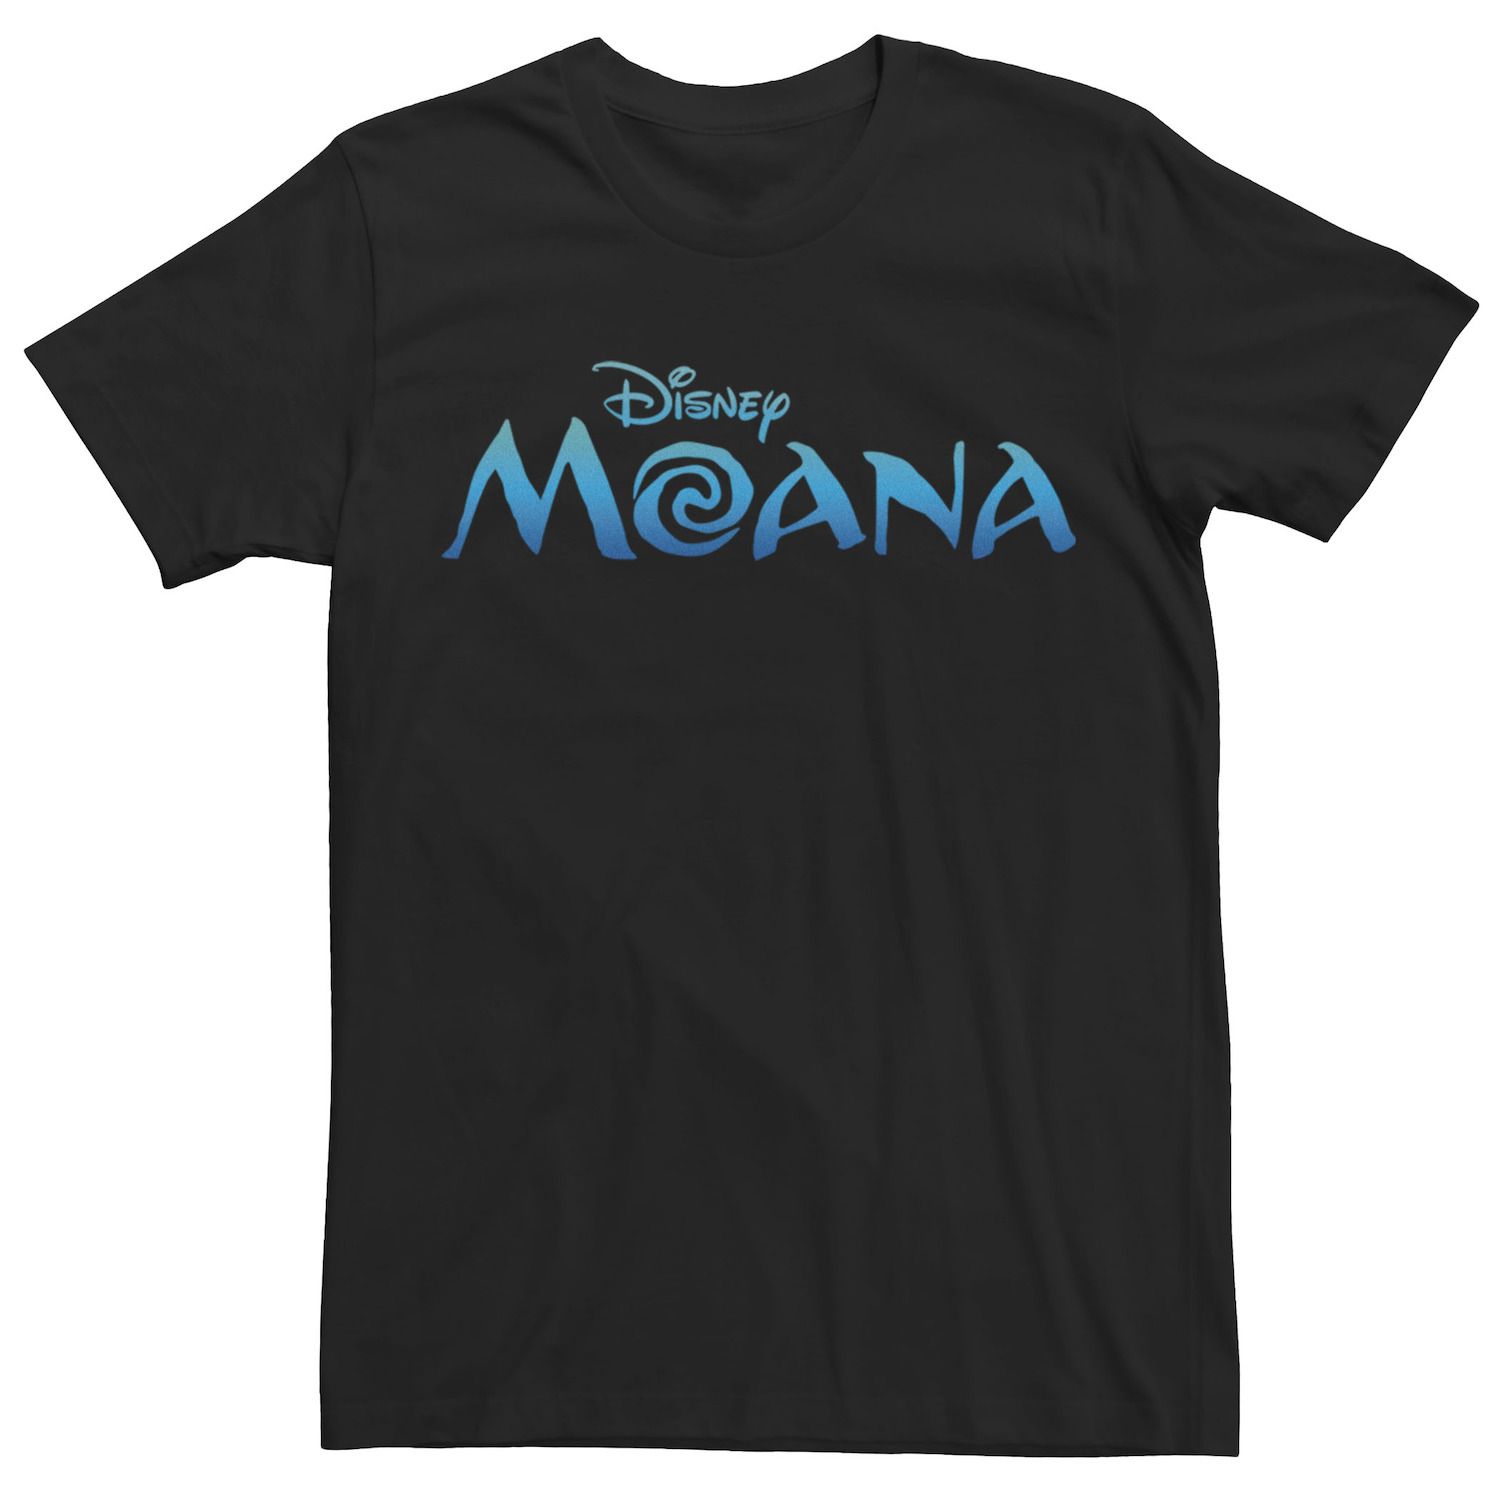 Мужская футболка с официальным логотипом фильма «Моана» Disney цена и фото